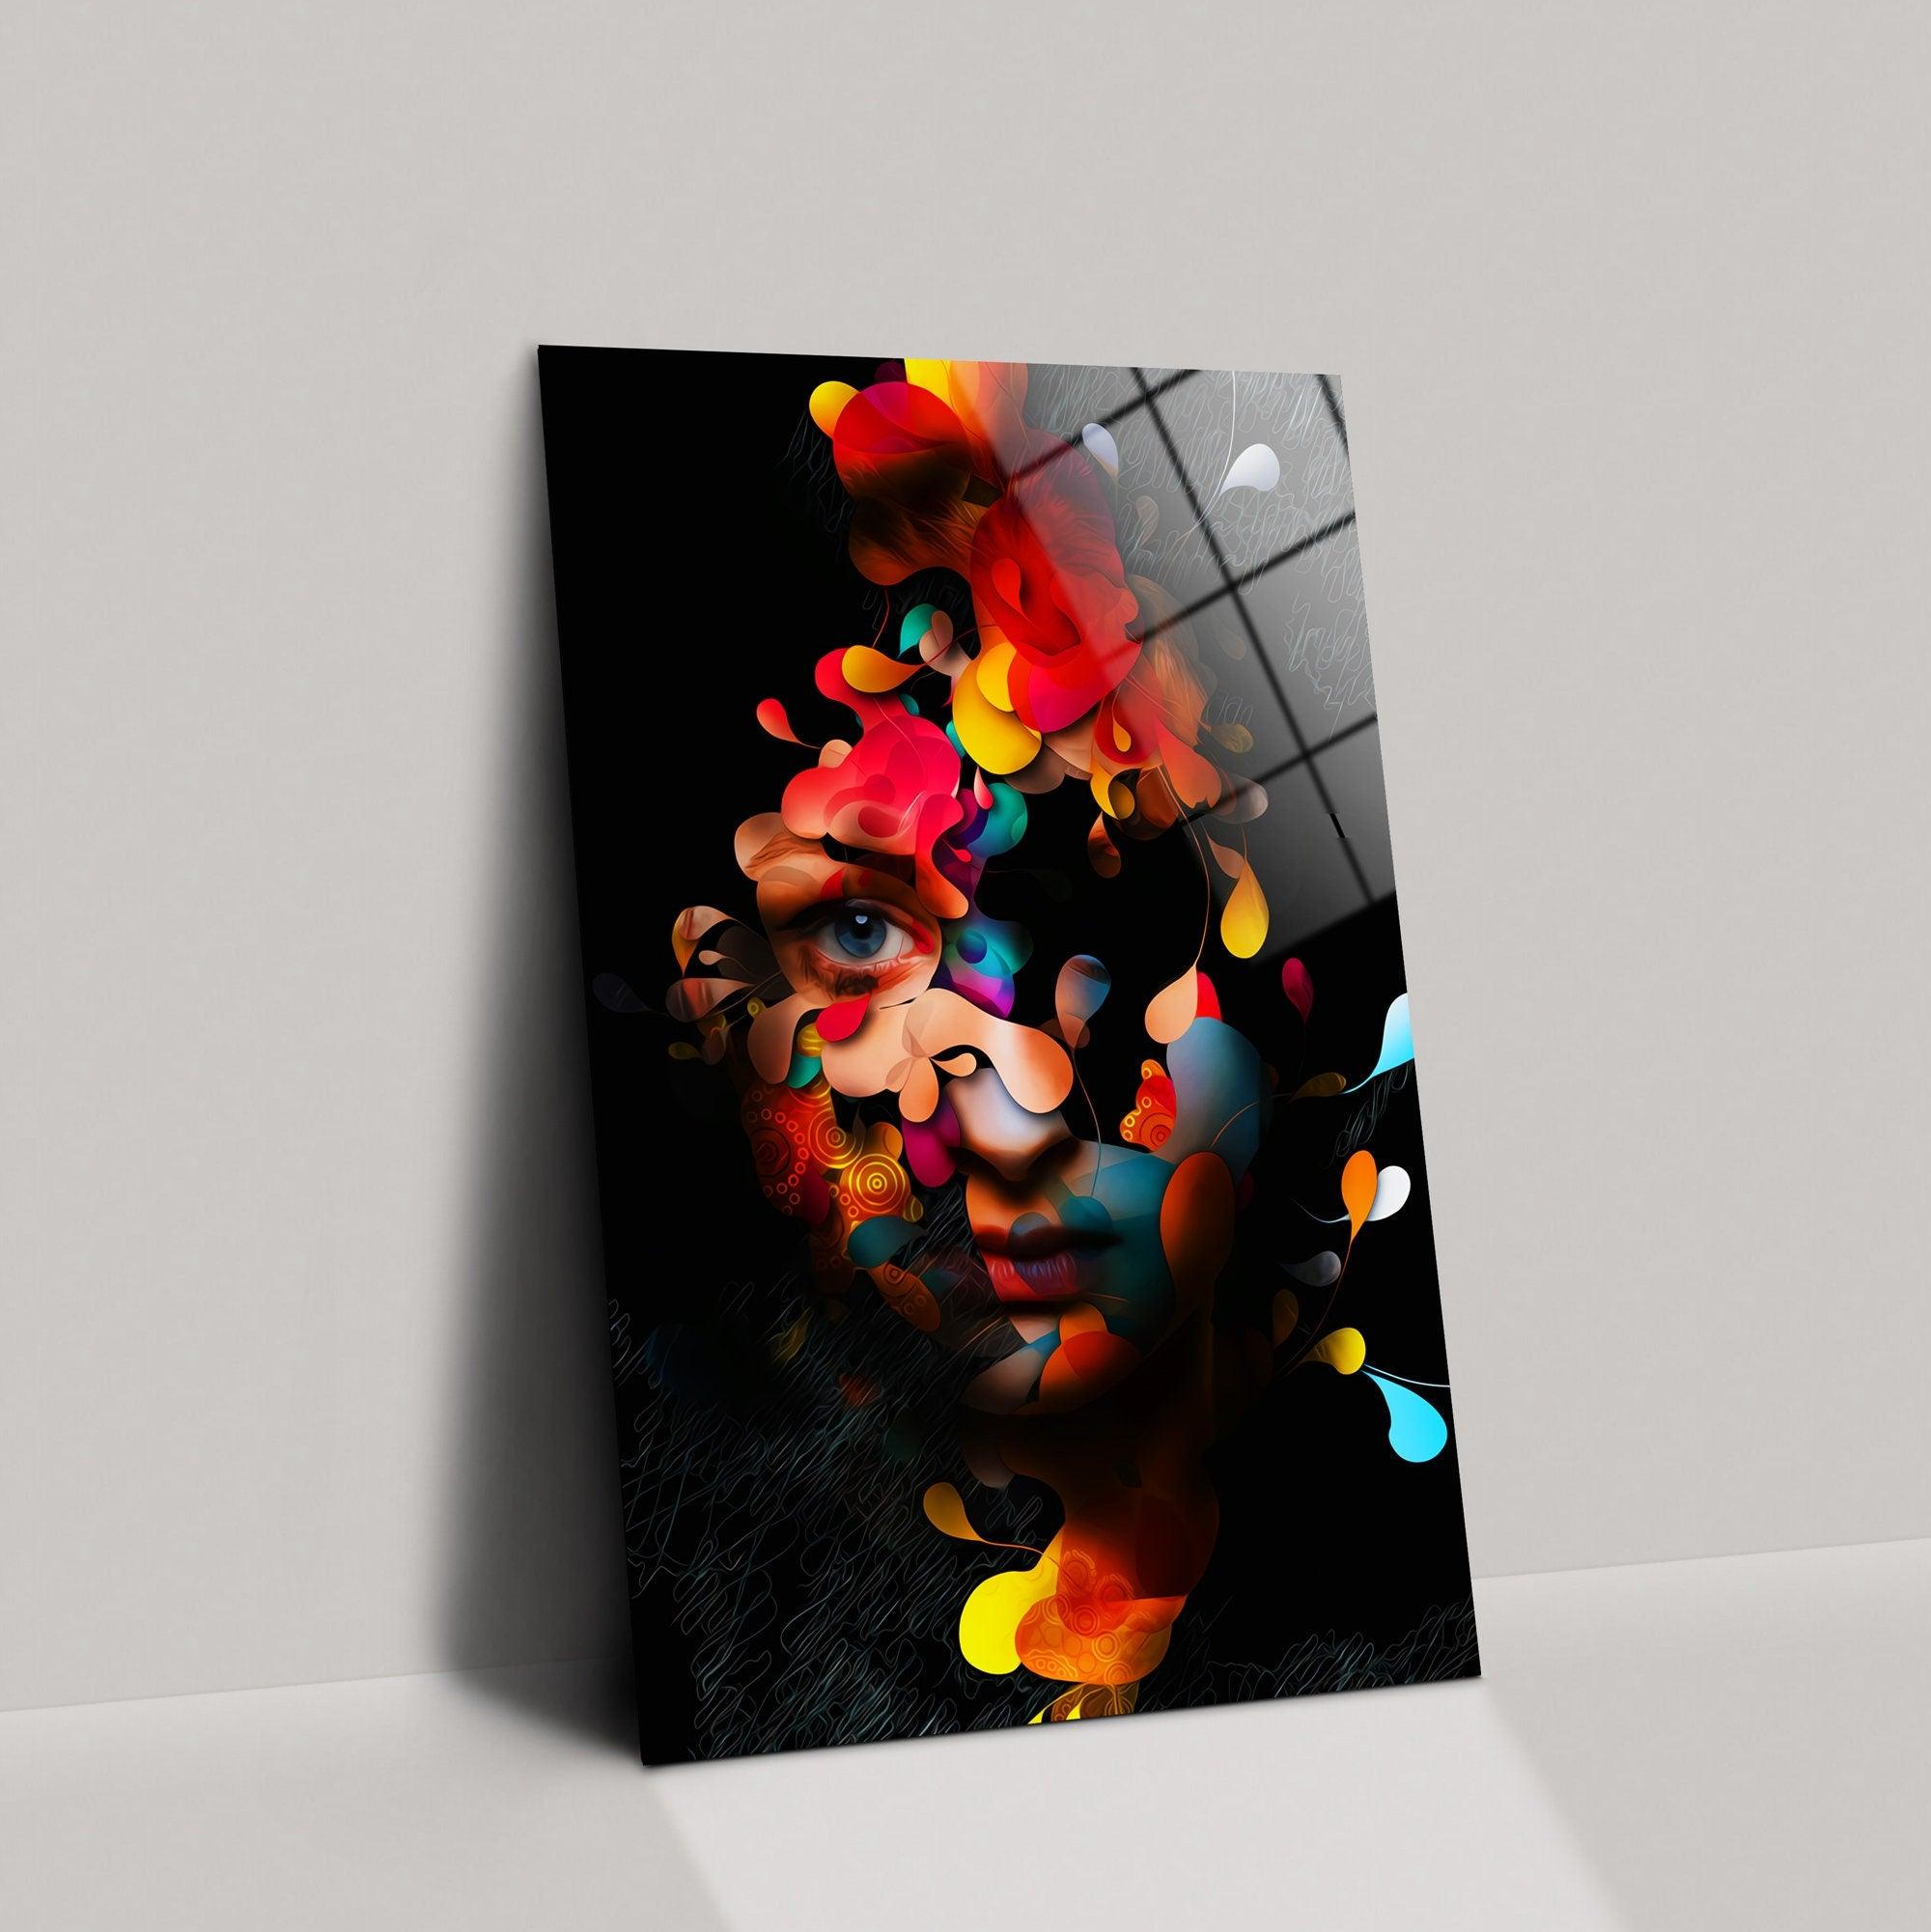 Woman Portrait glass Wall Art| Face Canvas Art, Portrait Painting Canvas, Abstract Face glass Art, Colorful Face Canvas Art, Face Wall Art